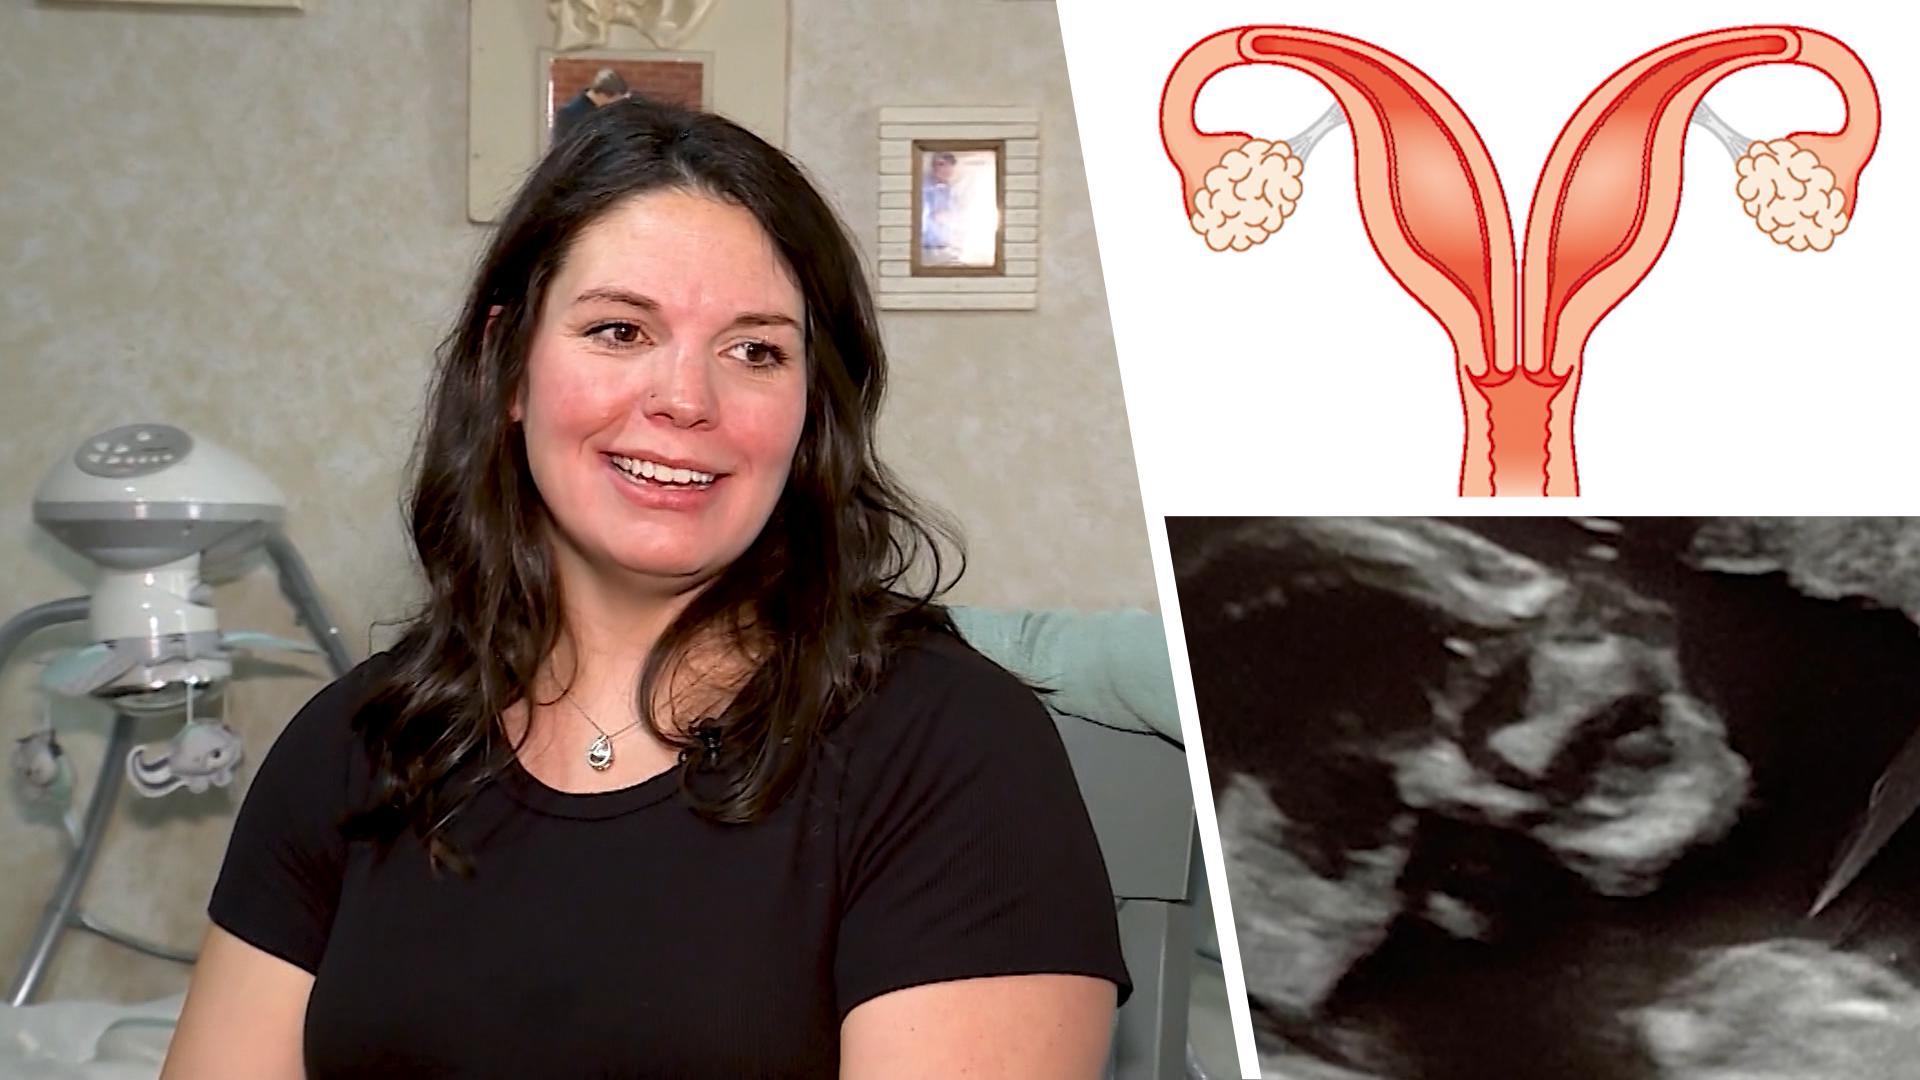 Frau hat zwei Gebärmütter - jetzt ist sie doppelt schwanger! Medizinisches Wunder